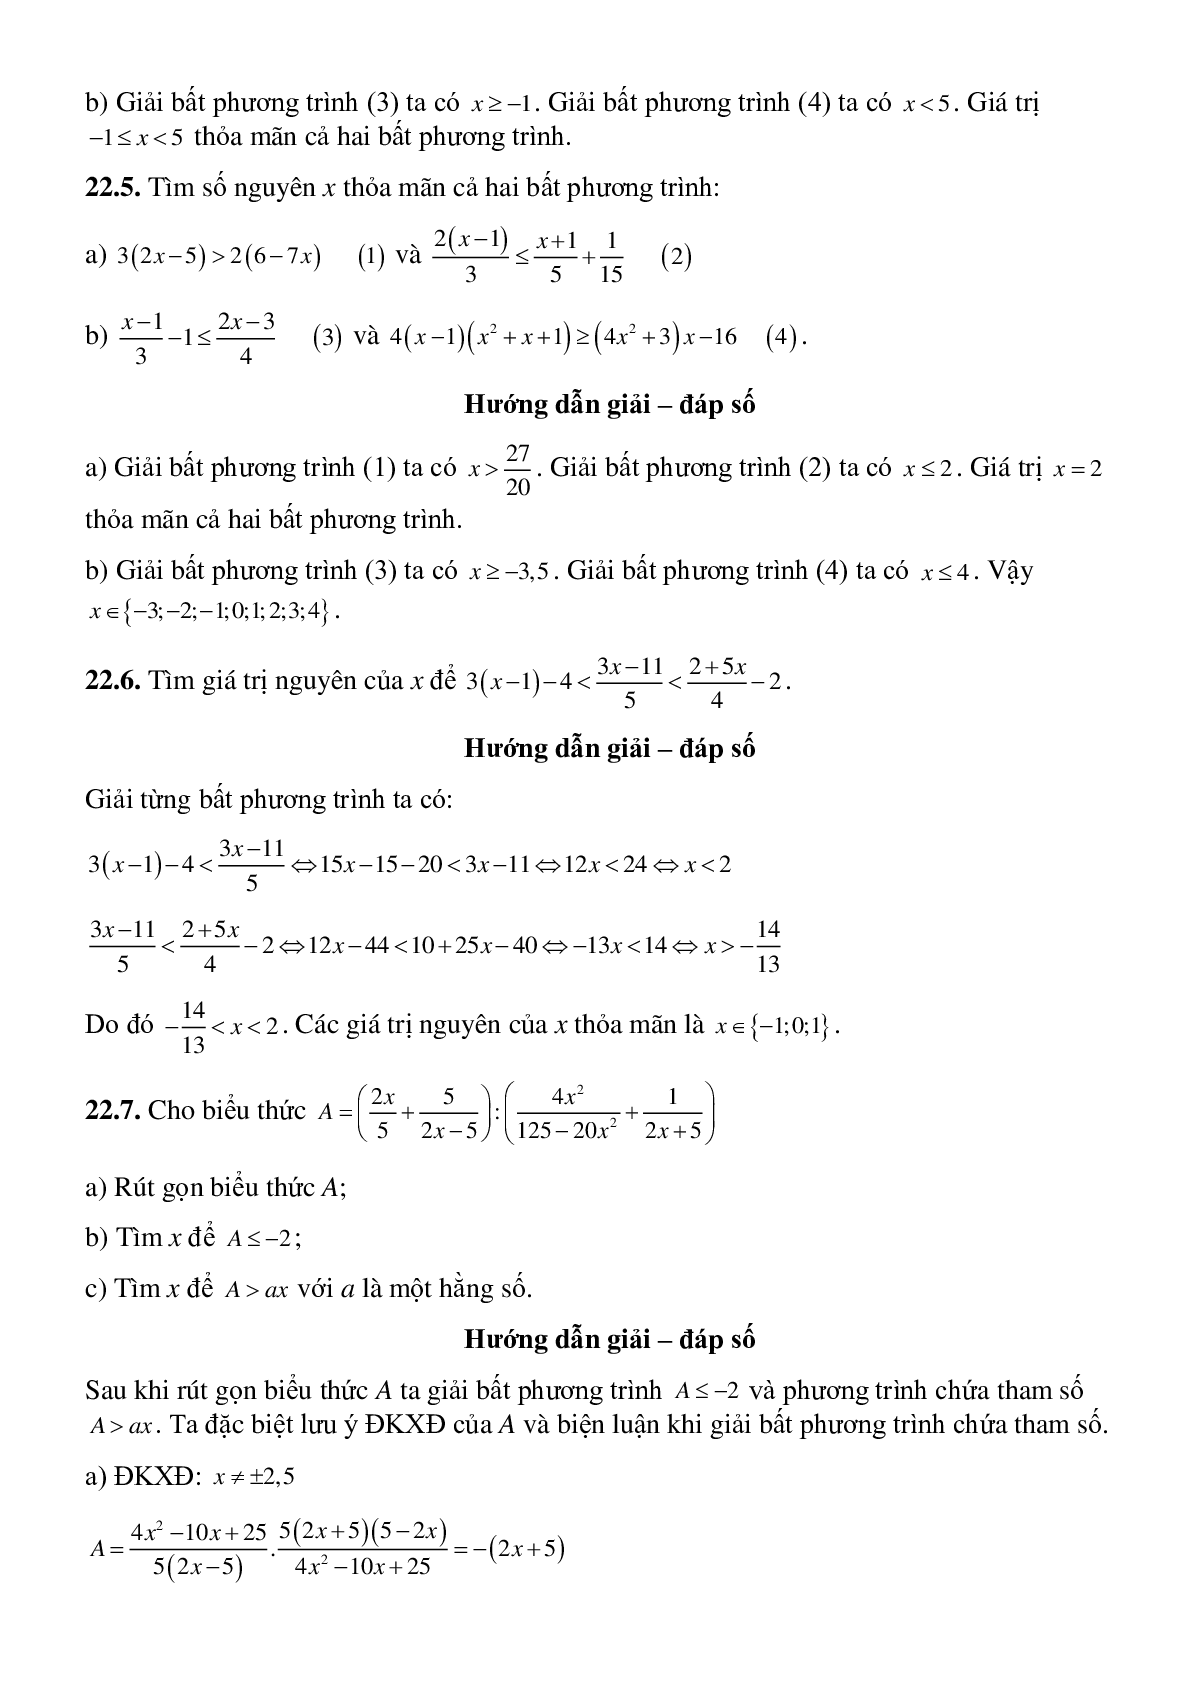 Bất phương trình bậc nhất một ẩn - Đại số toán 8 (trang 9)